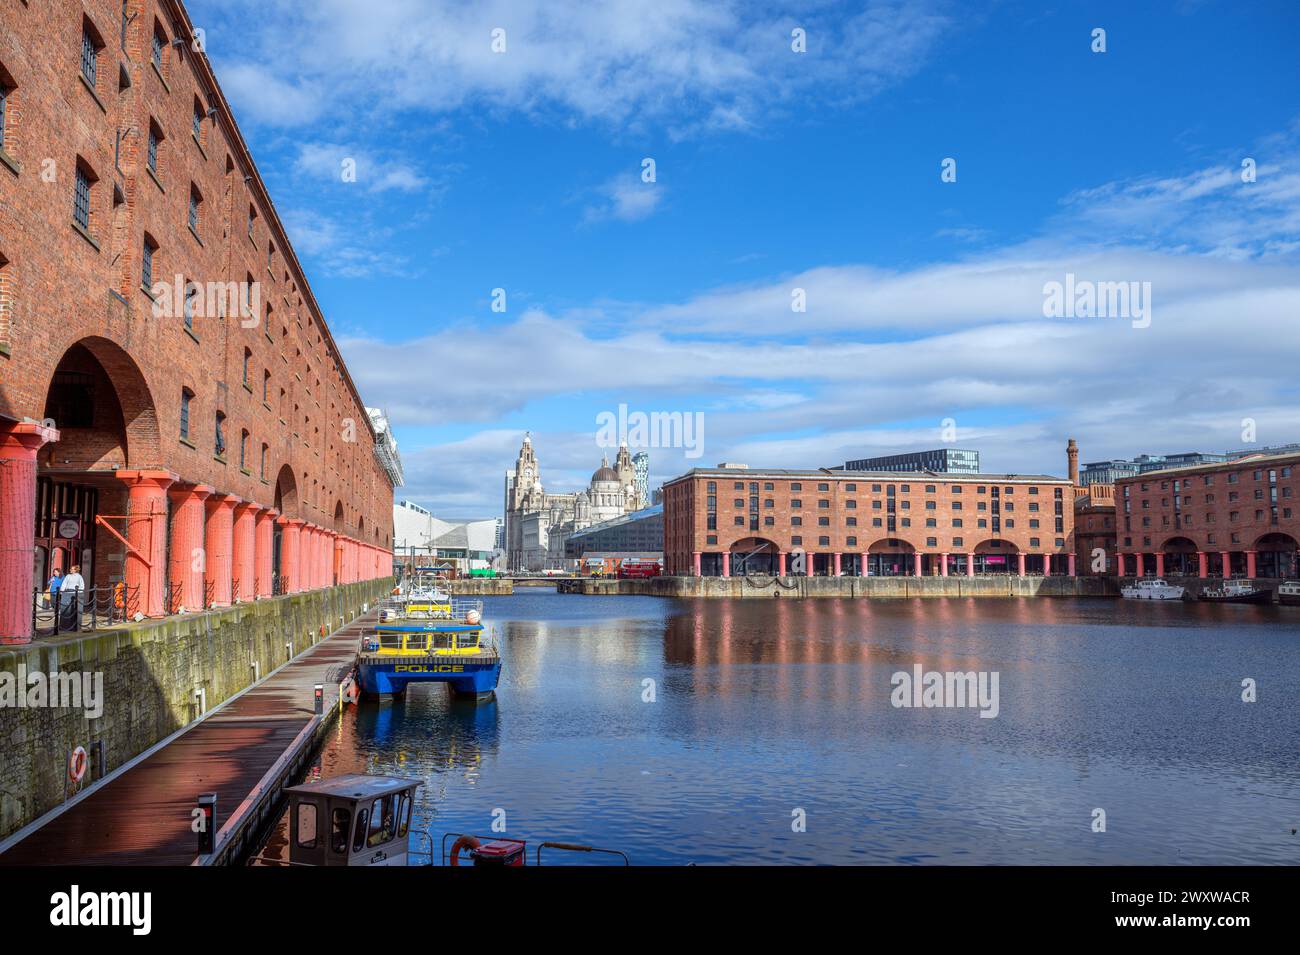 Albert Dock regardant vers les trois grâces et le Musée de Liverpool, Liverpool, Merseyside, Angleterre, Royaume-Uni Banque D'Images